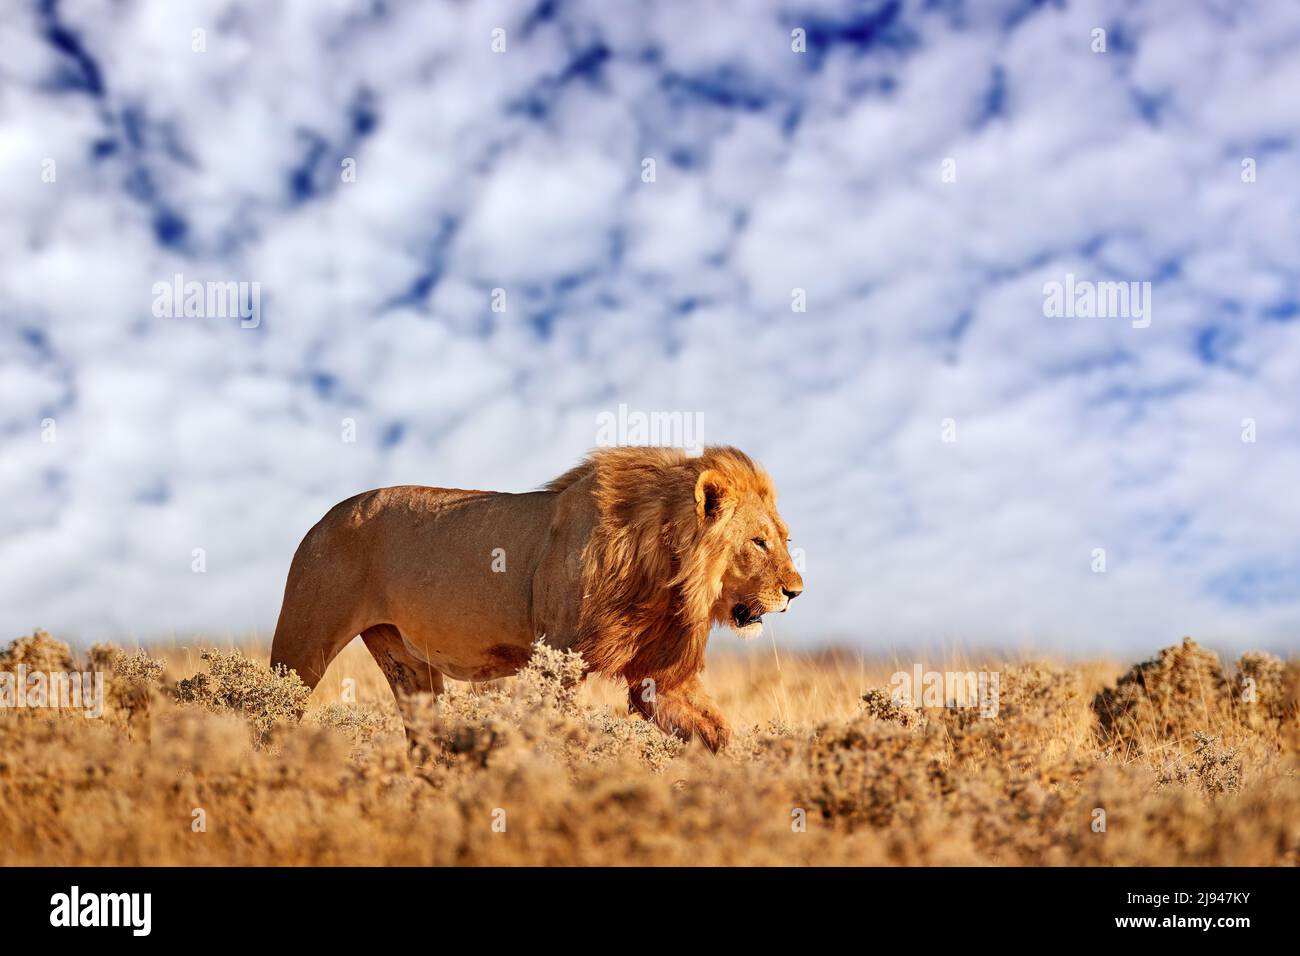 León con mane en Etosha, Namibia. León africano caminando en la hierba, con hermosa luz nocturna, cielo azul con nubes blancas. Escena de la vida silvestre de na Foto de stock